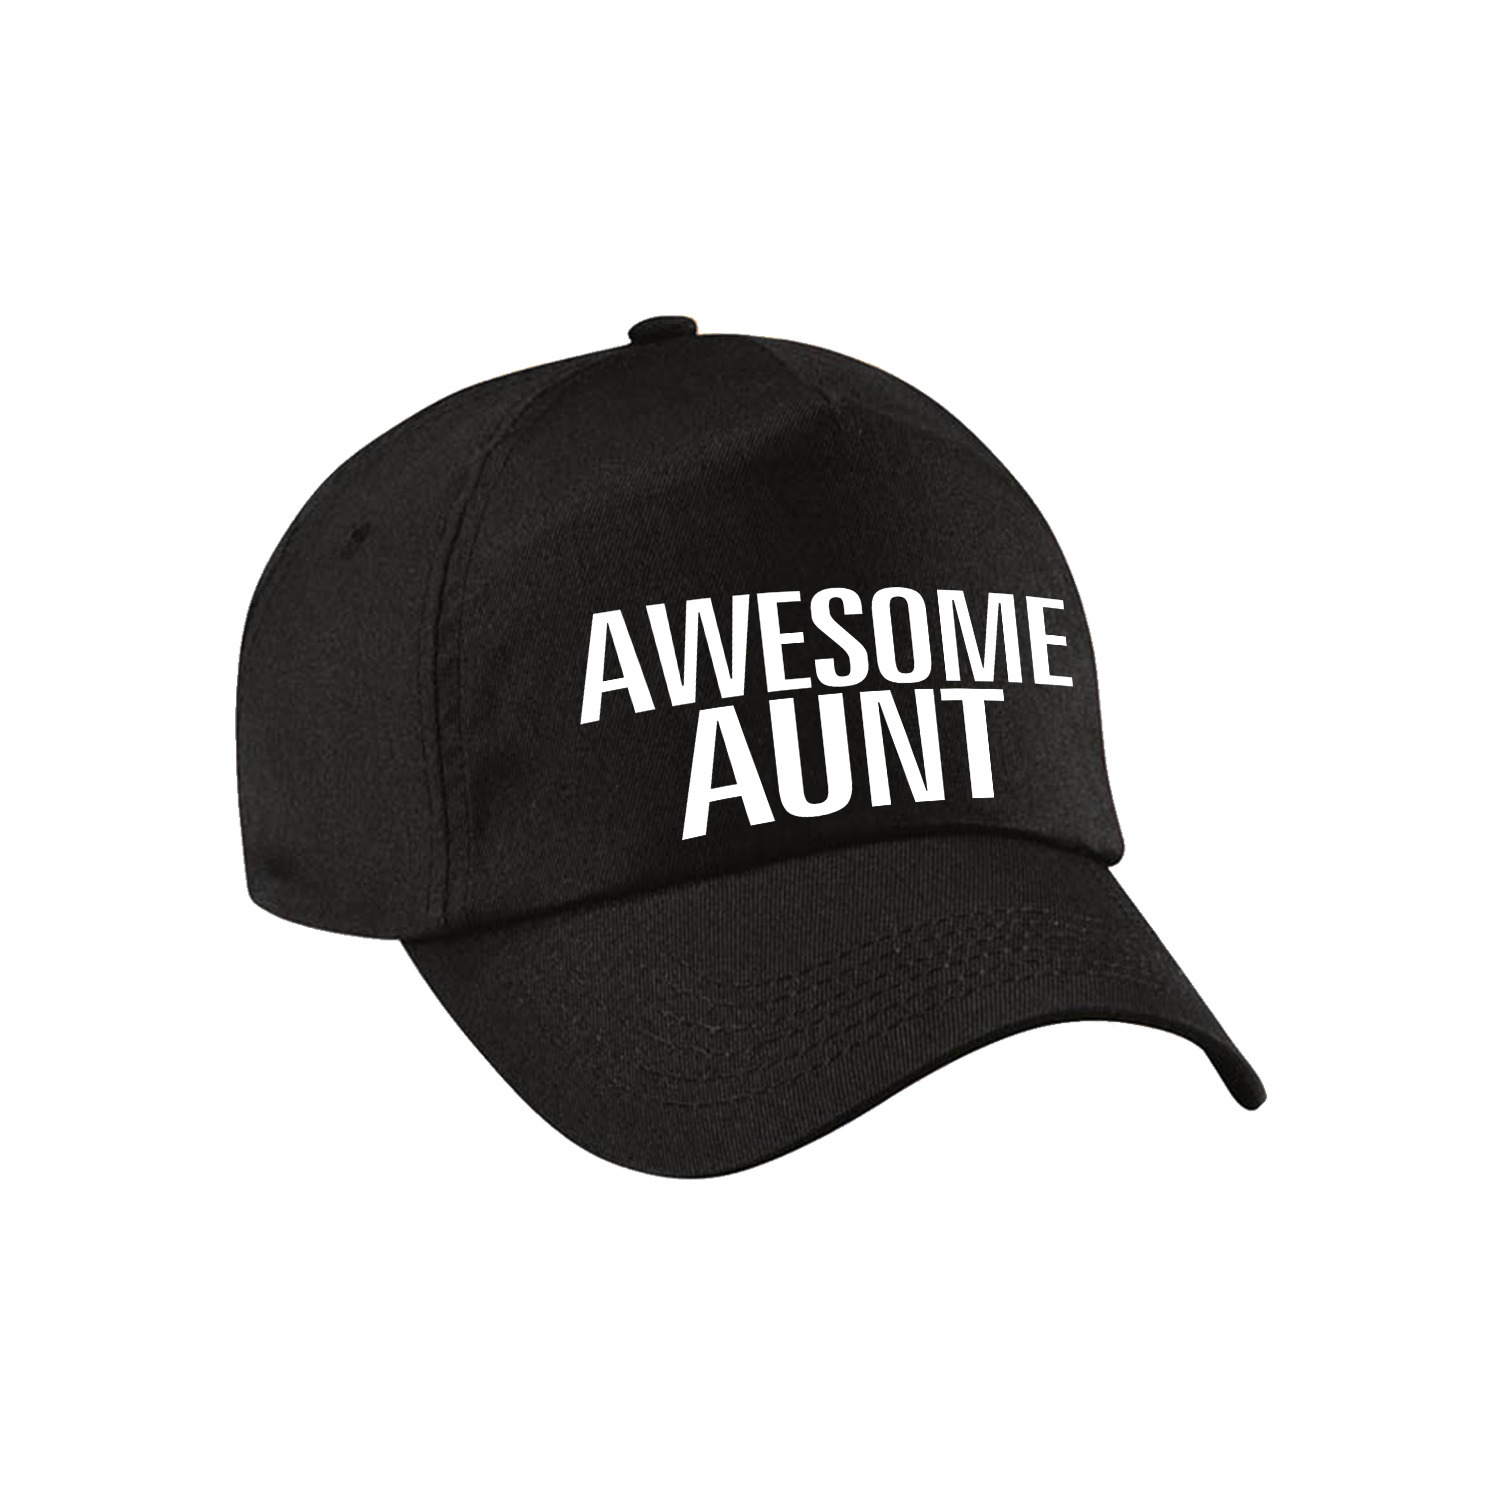 Awesome aunt pet / cap voor tante zwart voor dames